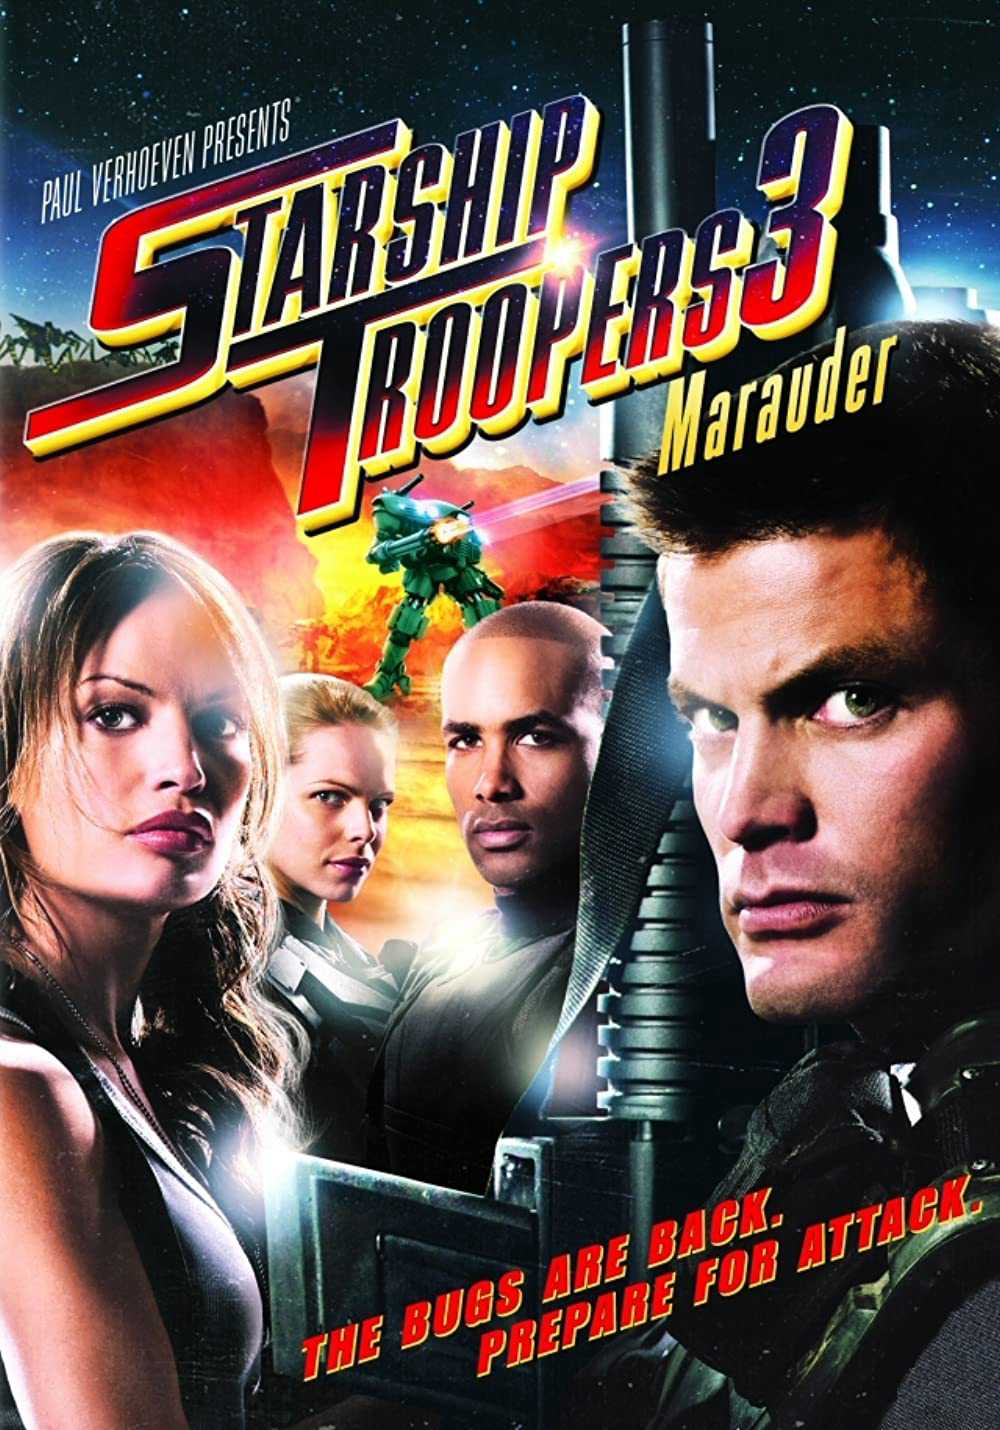 Chiến binh vũ trụ 3: hành tinh marauder - Starship troopers 3: marauder